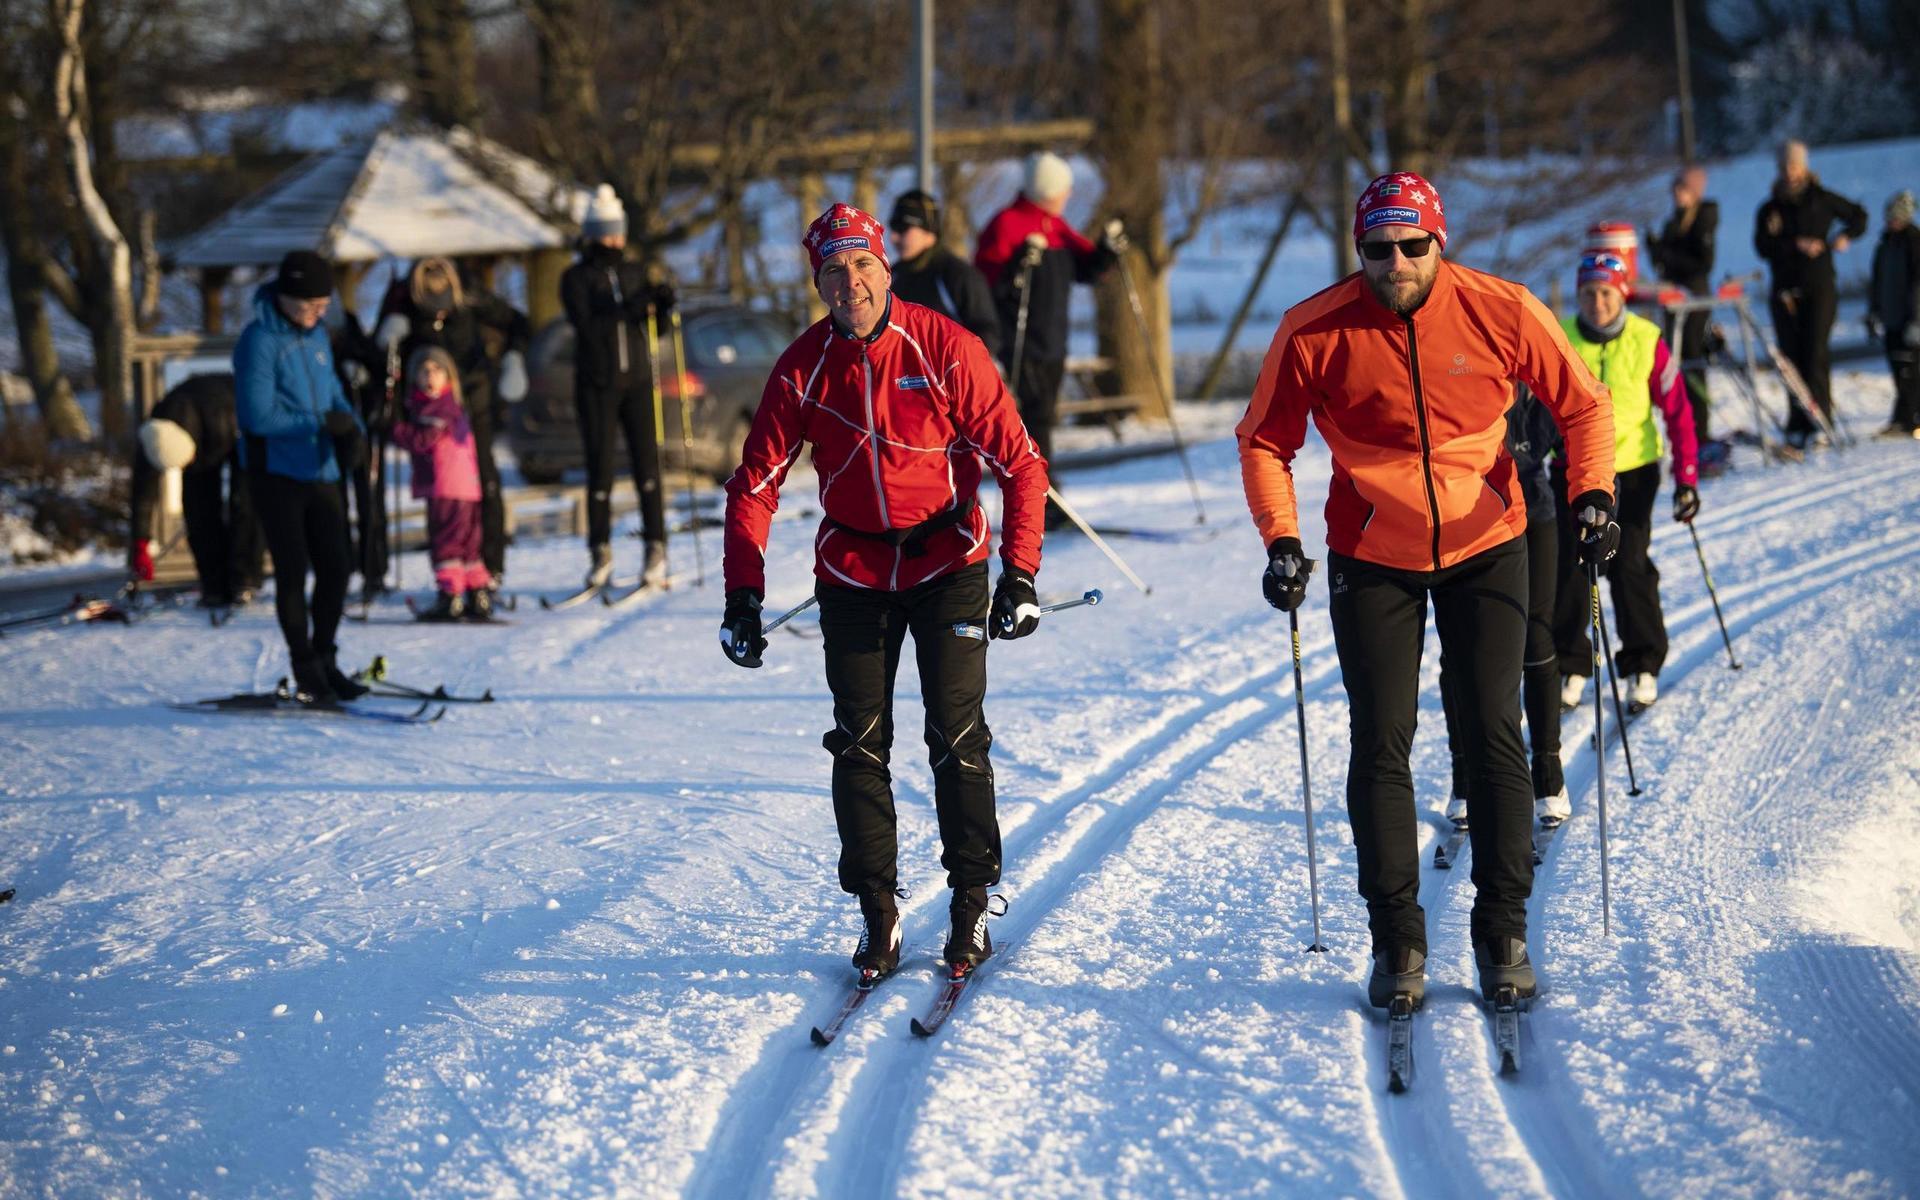 Vasaloppsvinnaren Staffan Larsson är på plats för att lära hallänningarna lite knep för att bli bättre skidåkare. Ringenäs skidarena